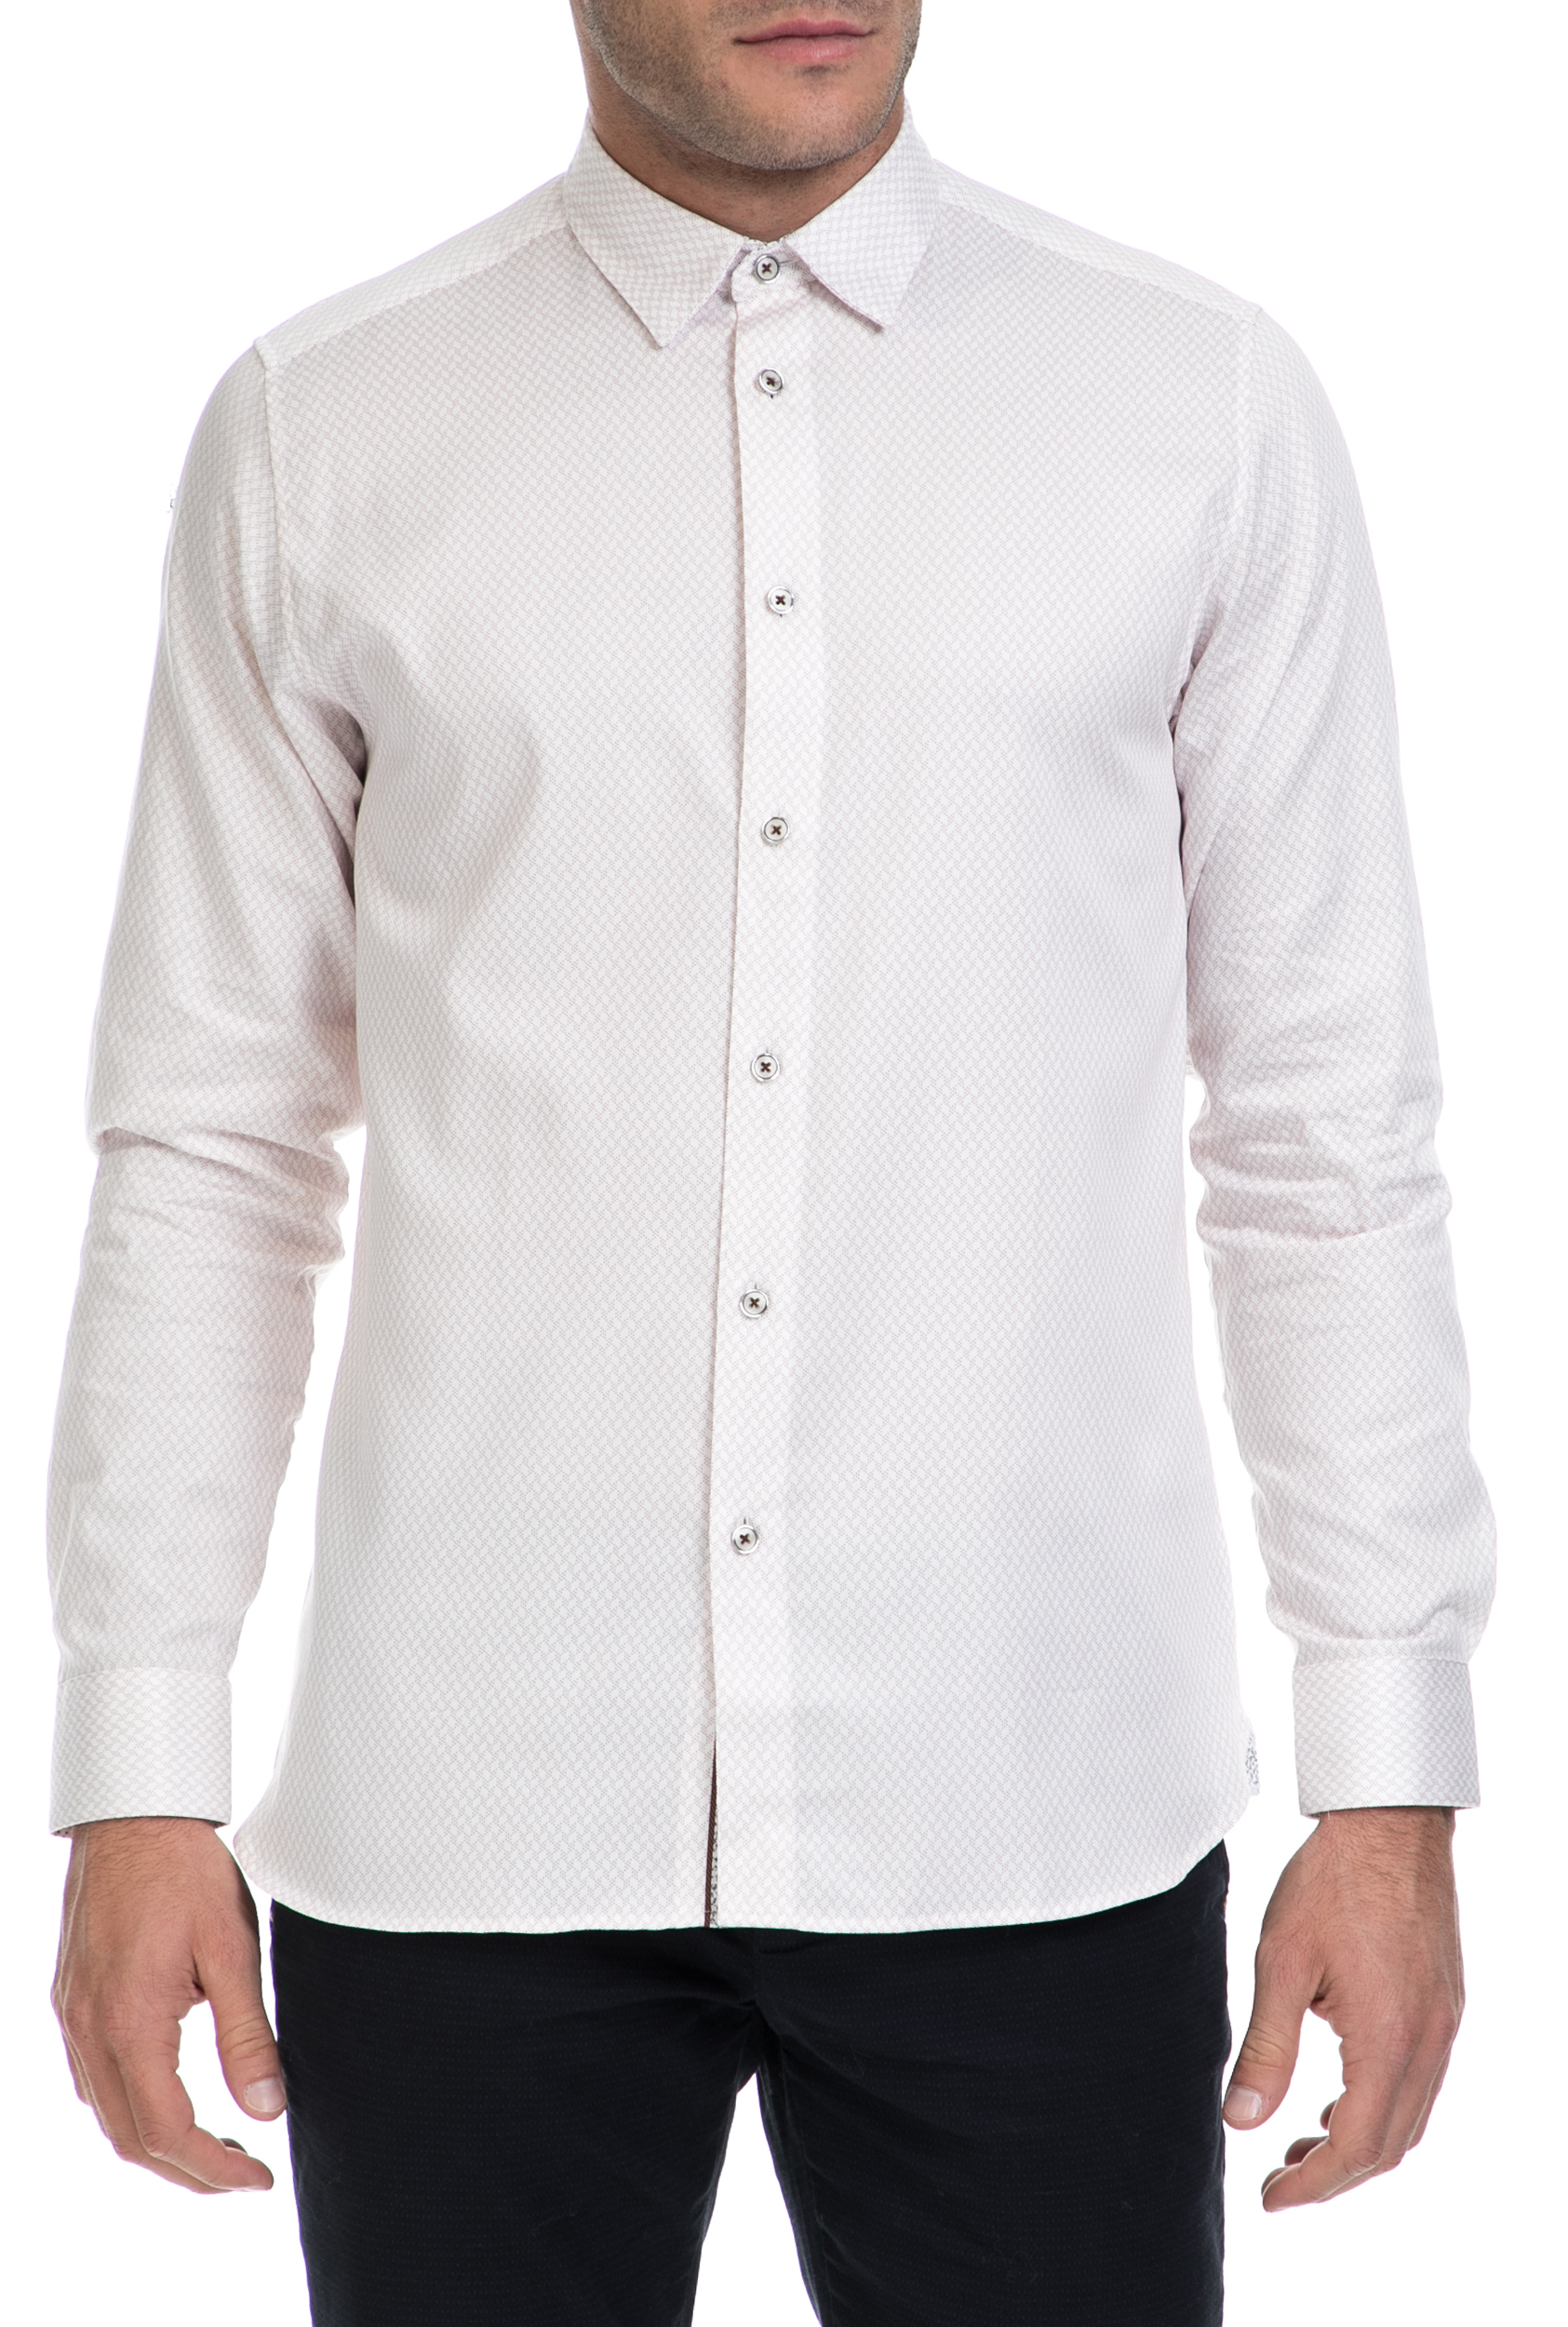 TED BAKER – Ανδρικο πουκαμισο SENNE TED BAKER λευκο